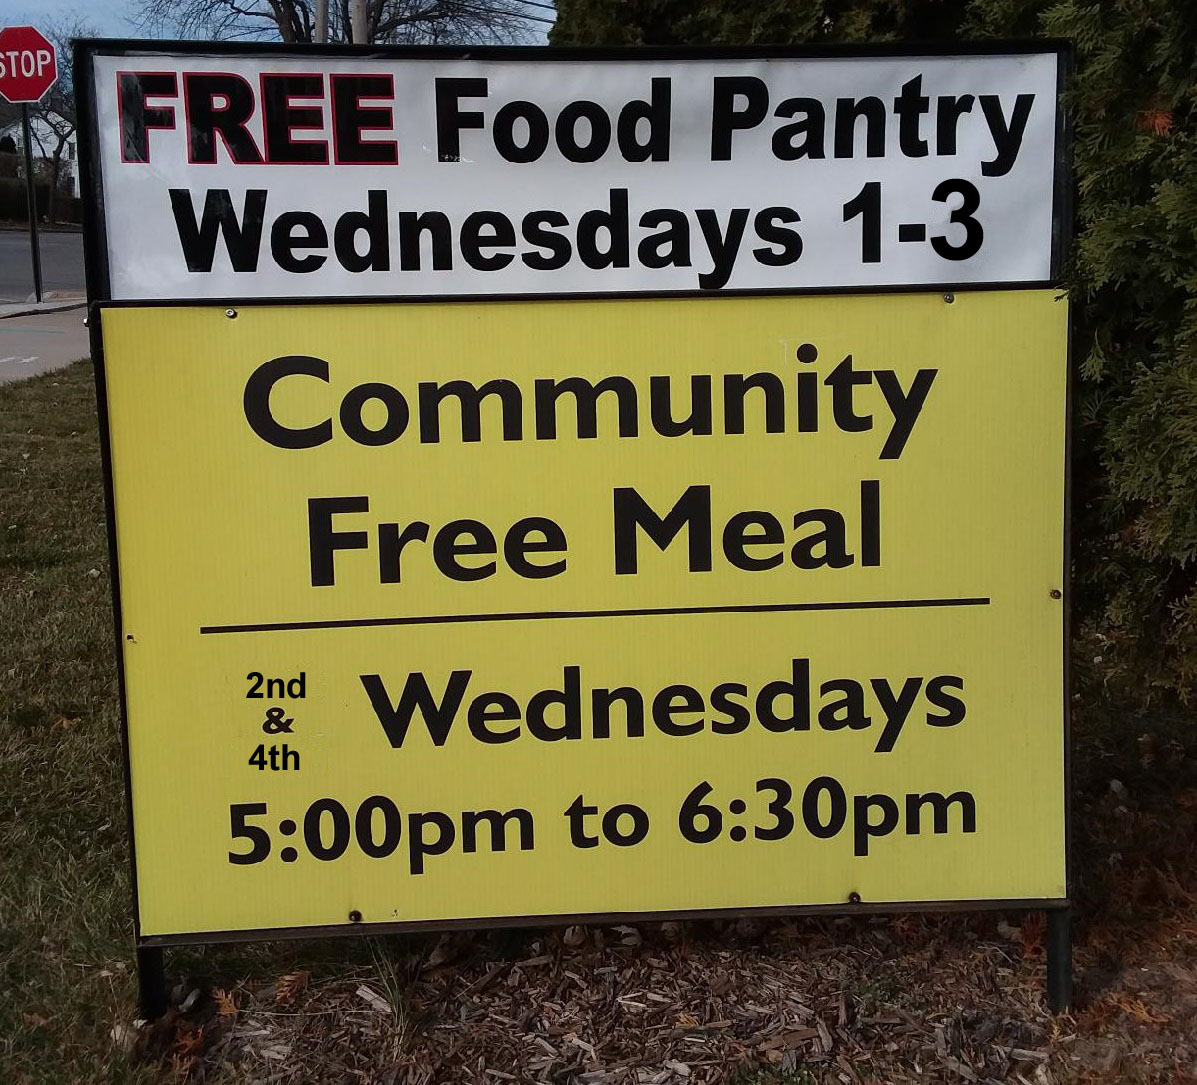 FREE Food Pantry